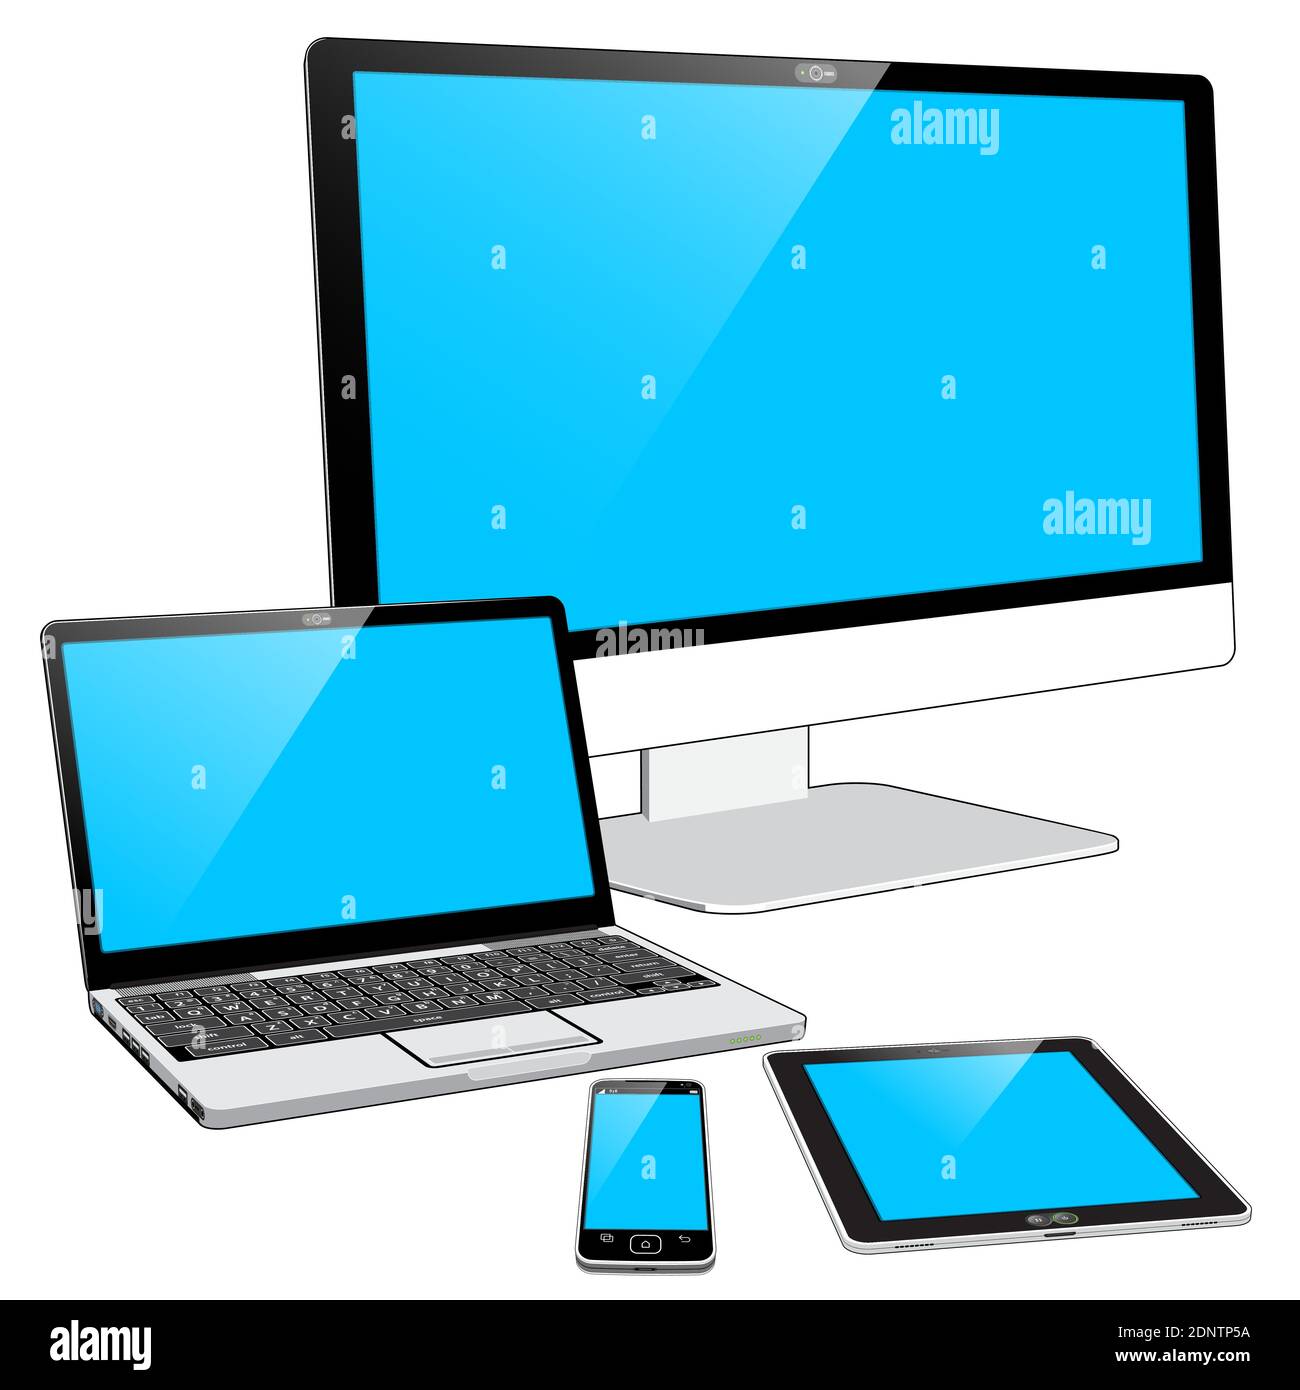 Una raccolta raggruppata di 4 dispositivi attuali: Uno smartphone, un Tablet PC, un notebook e un PC all-in-one con ampio display. Illustrazione Vettoriale